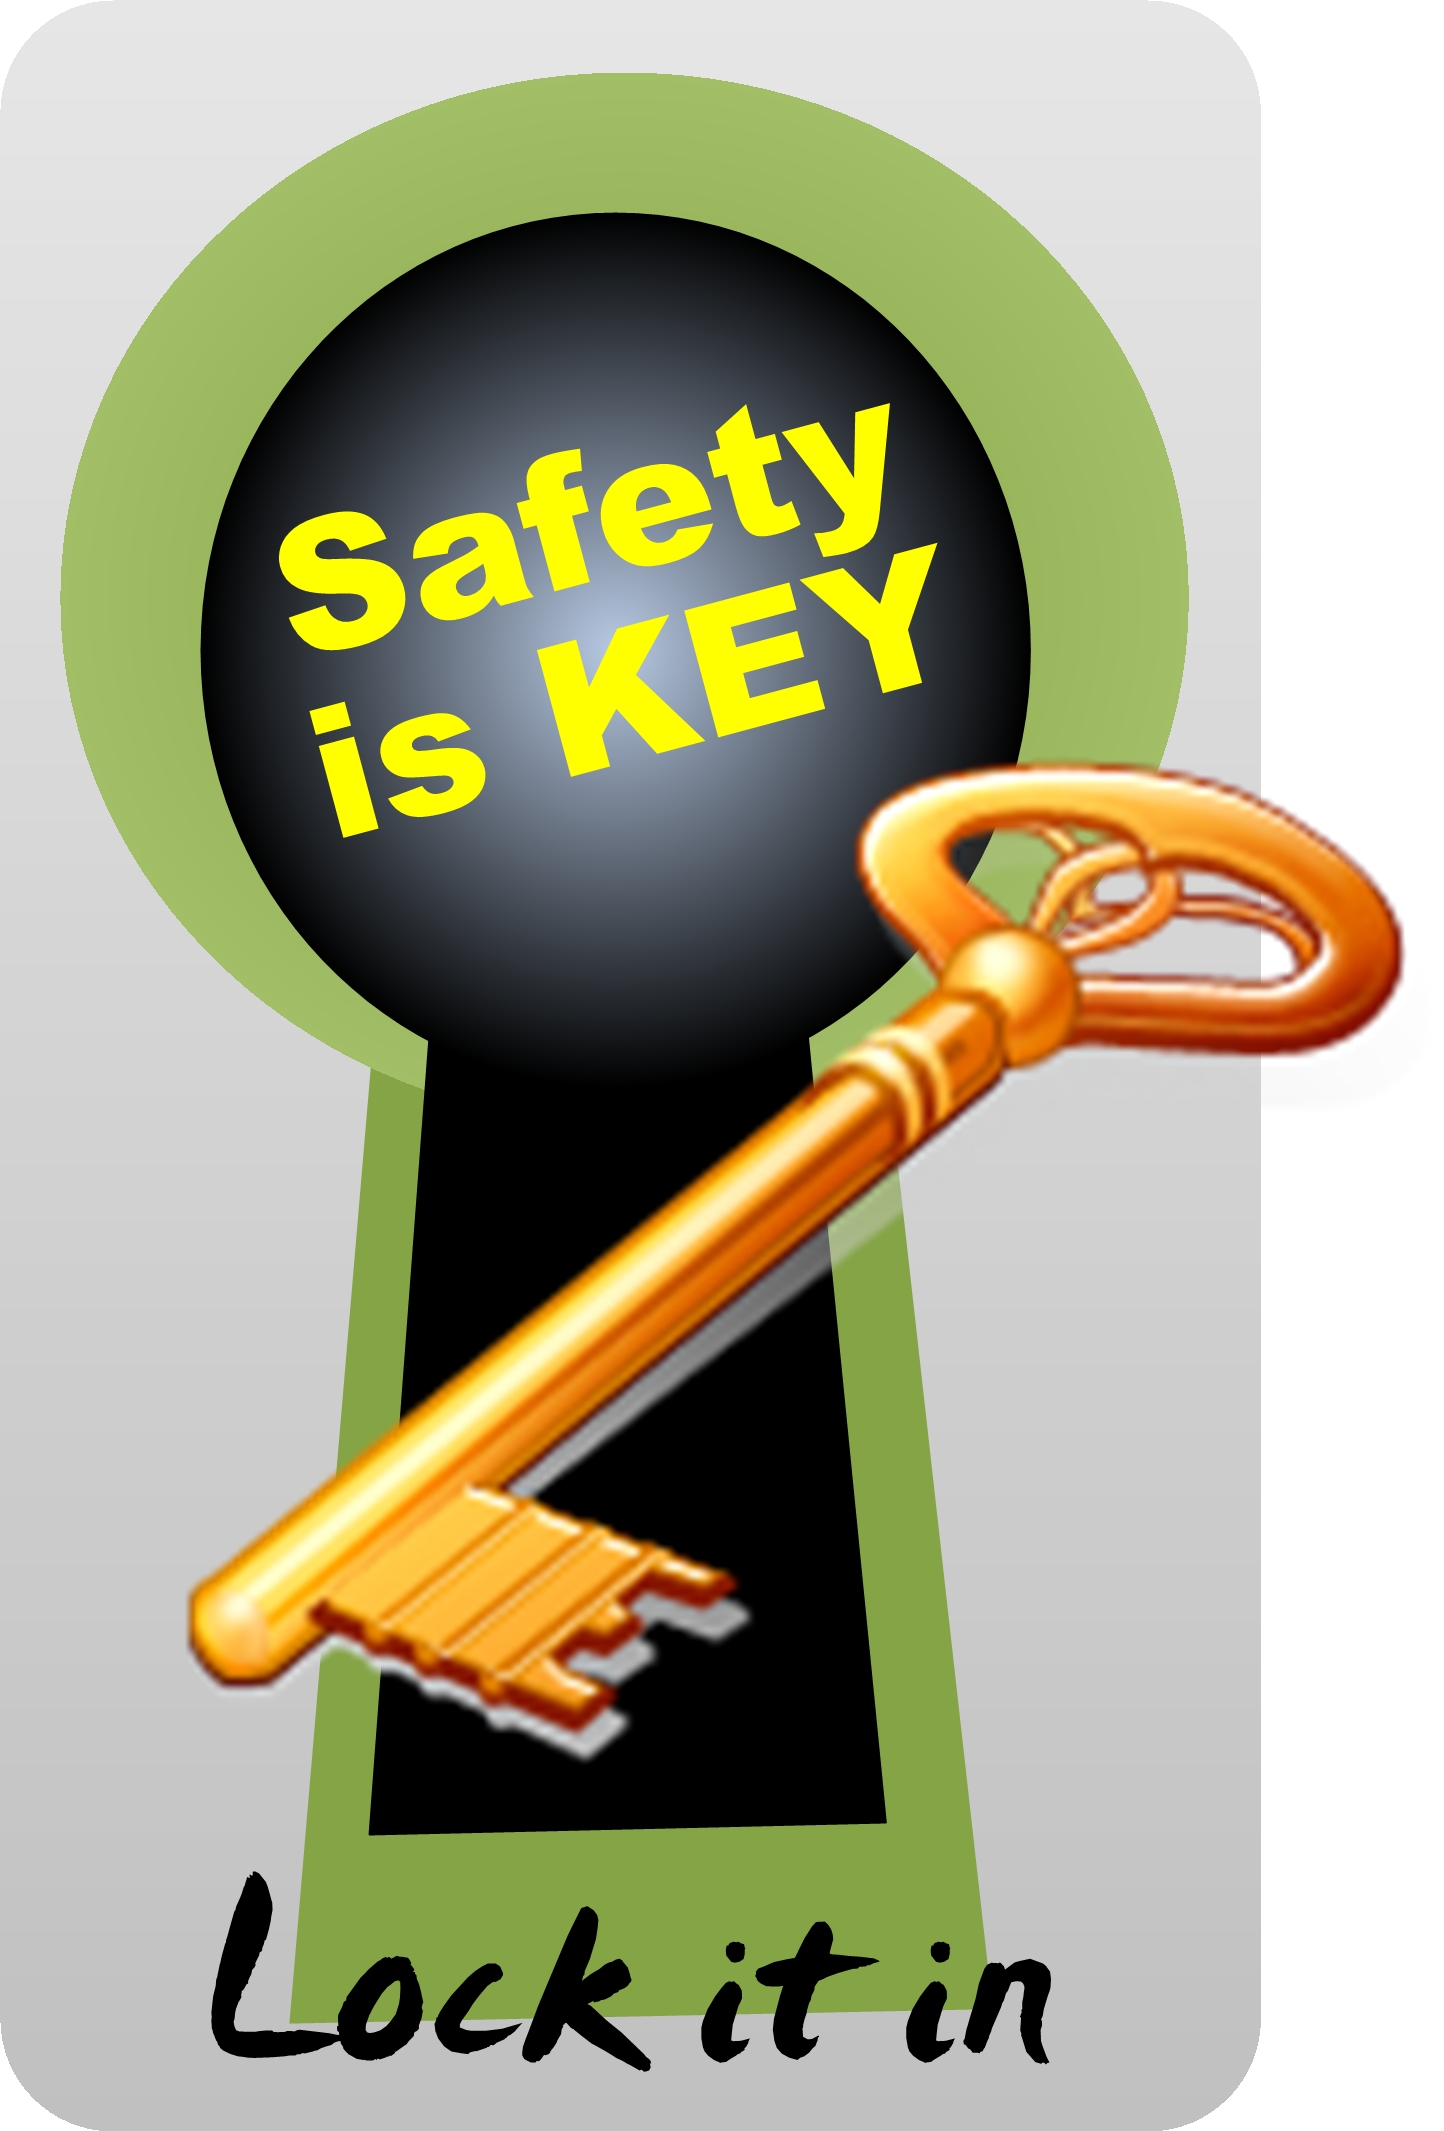 Safety Logos